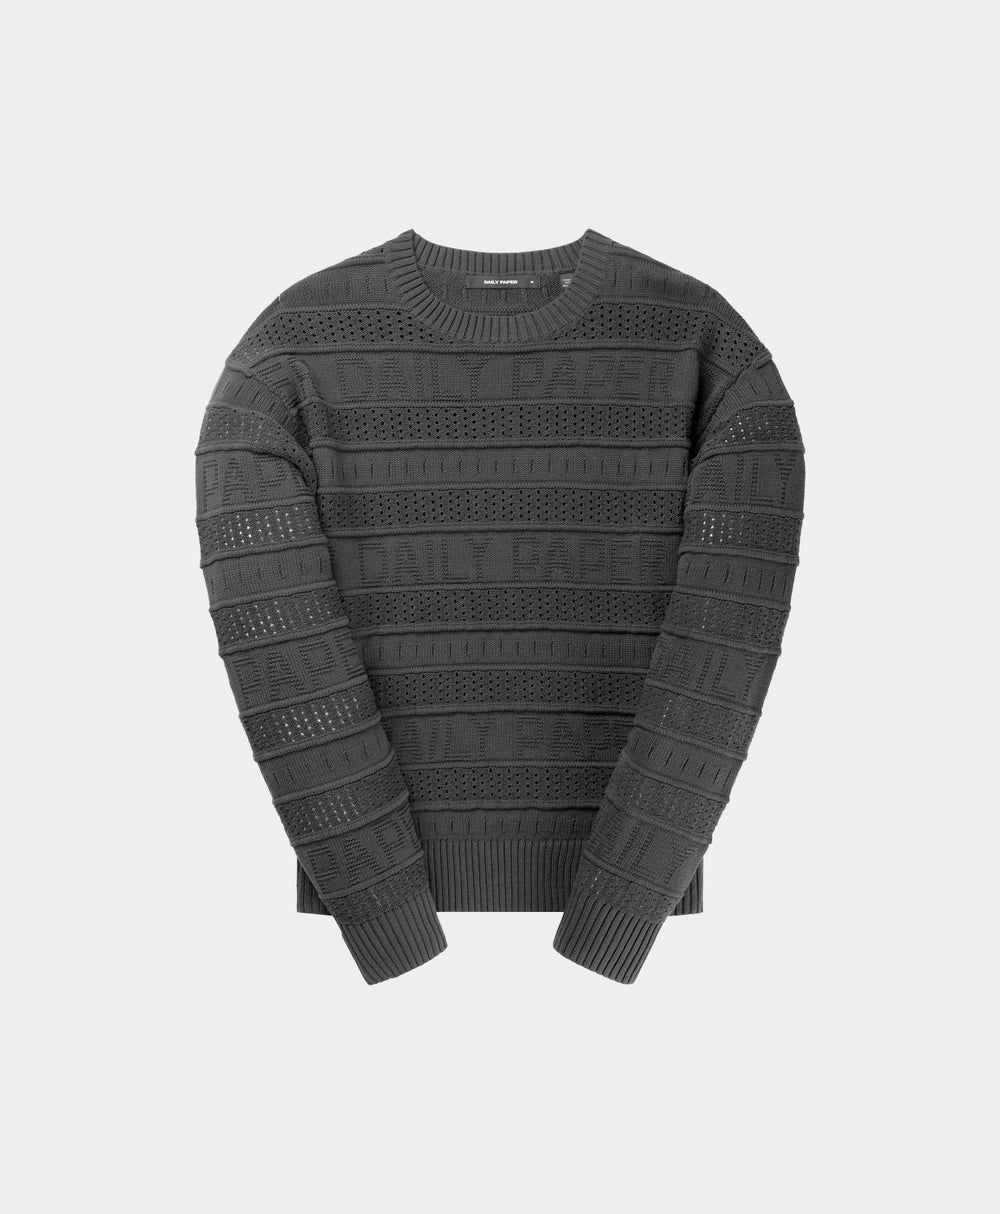 DP - Black Rajih Knit Sweater - Packshot - Front